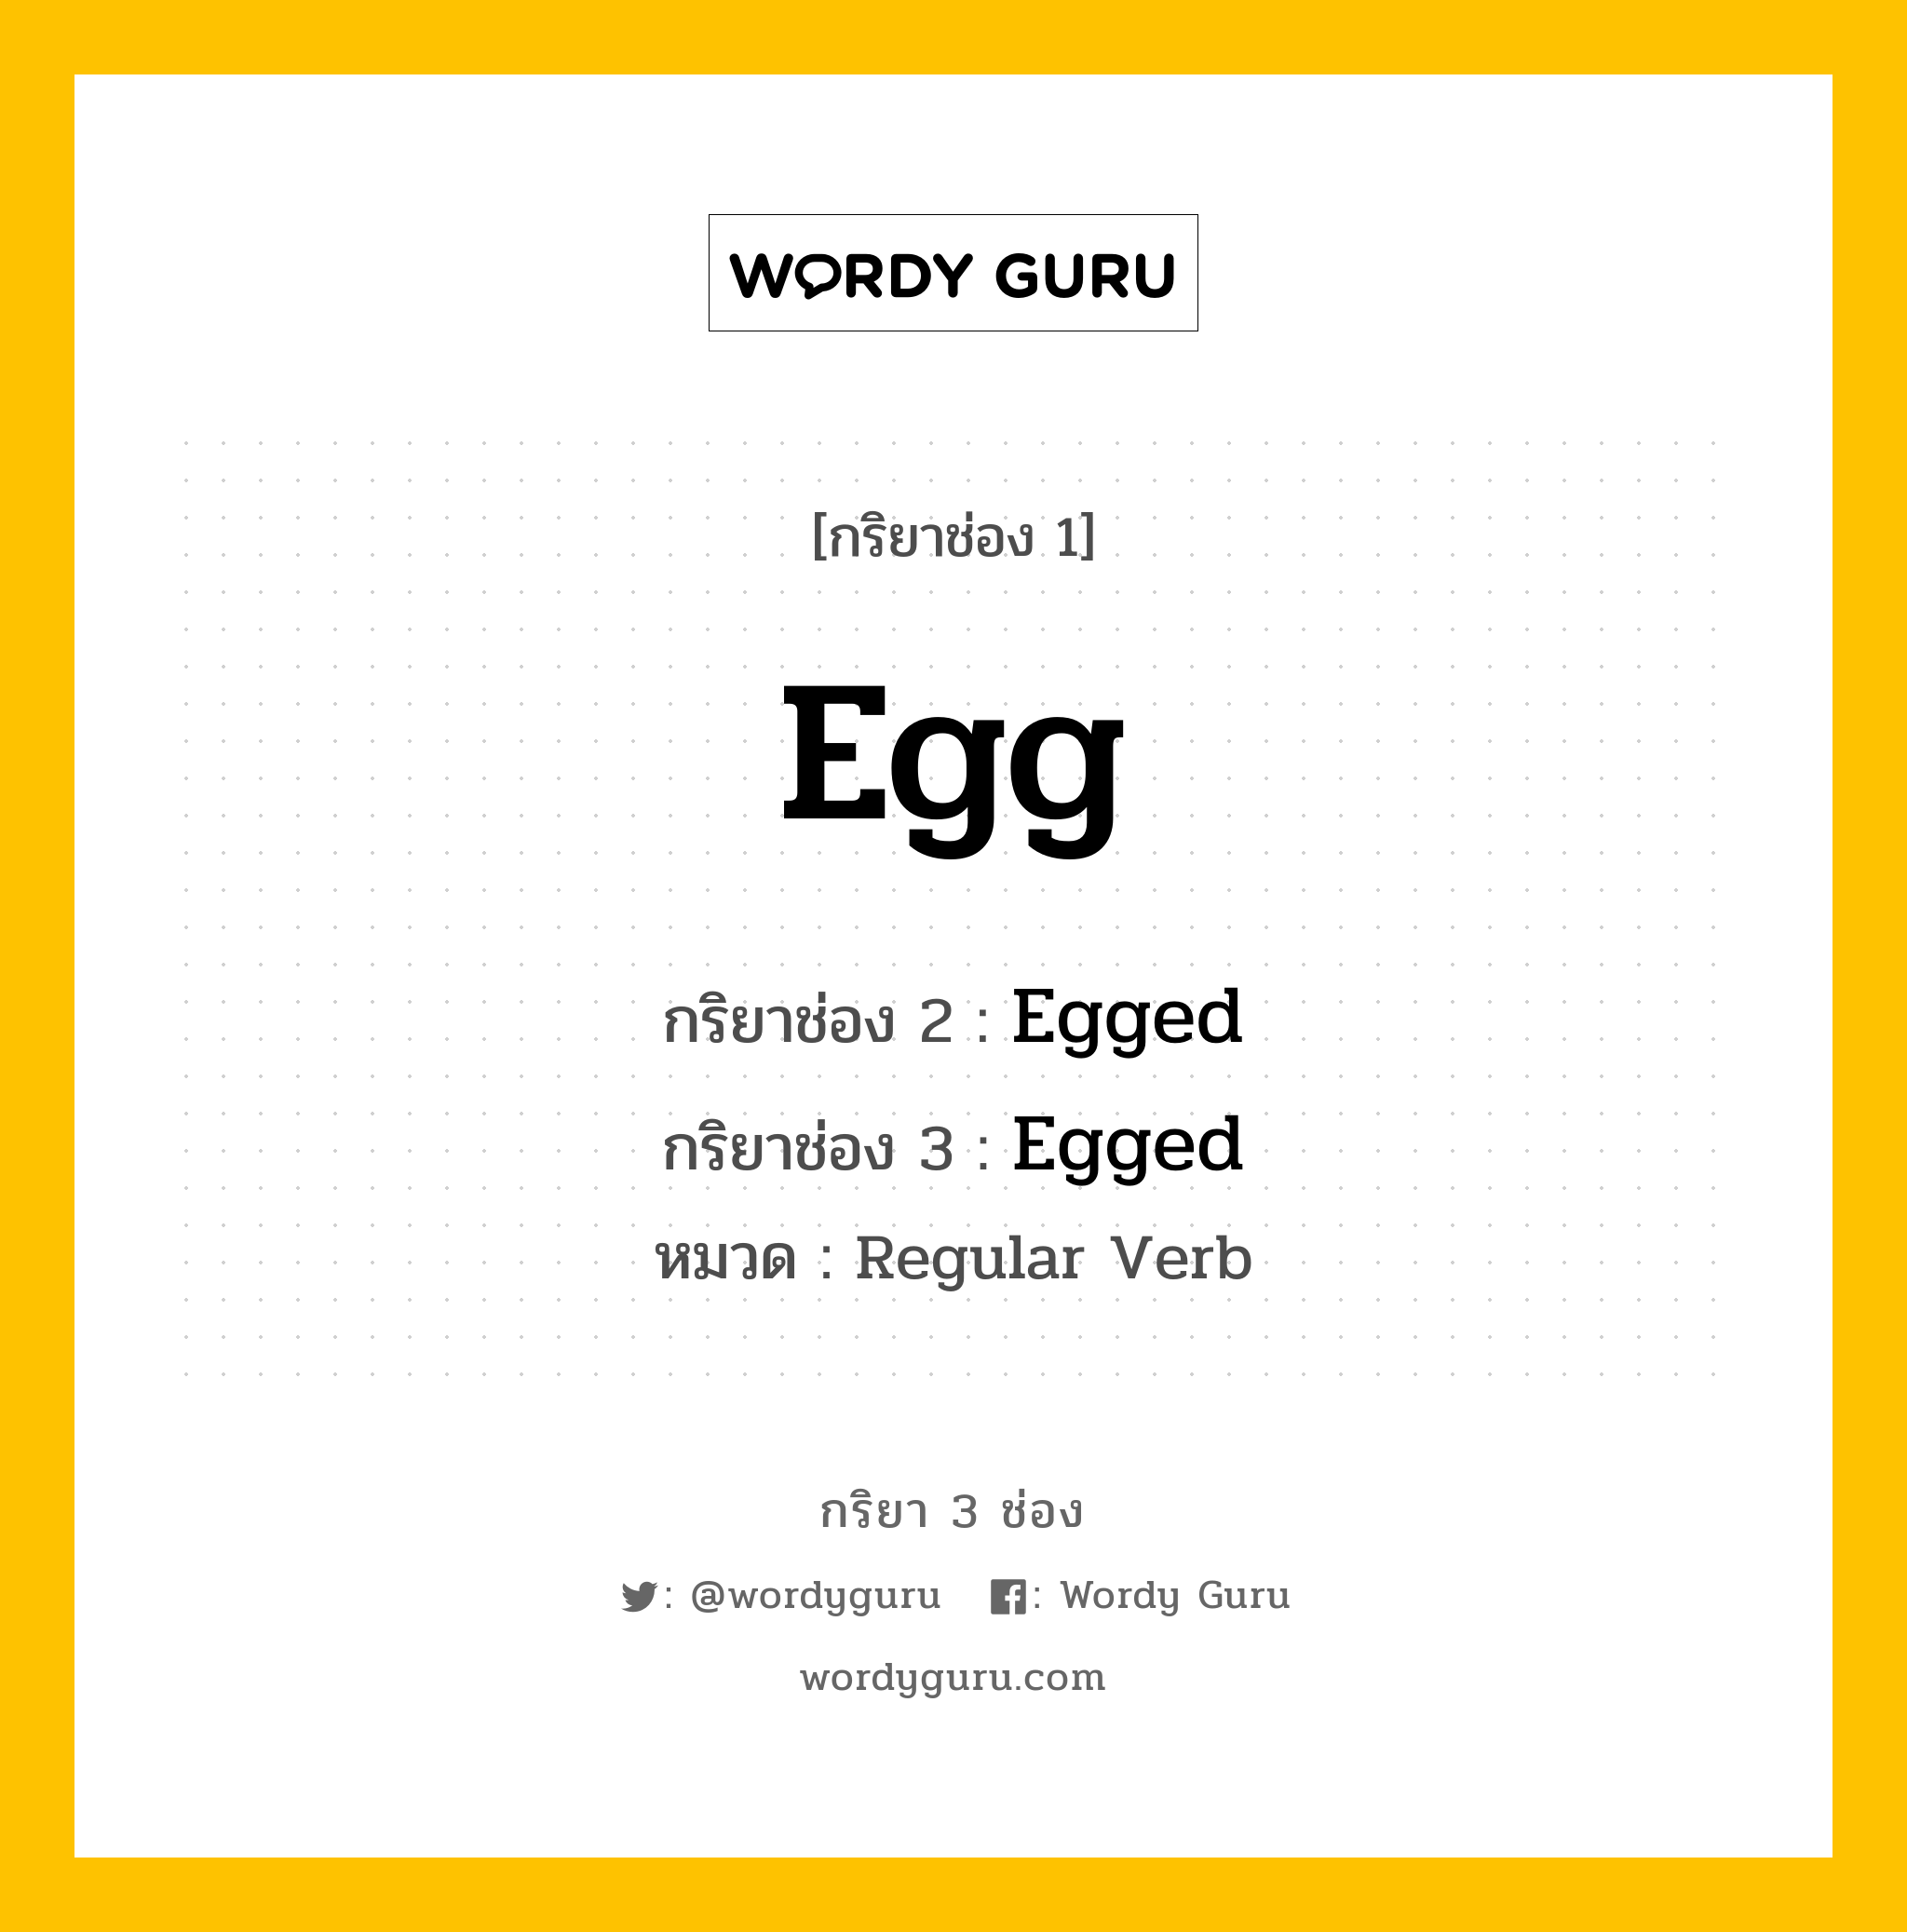 กริยา 3 ช่อง: Egg ช่อง 2 Egg ช่อง 3 คืออะไร, กริยาช่อง 1 Egg กริยาช่อง 2 Egged กริยาช่อง 3 Egged หมวด Regular Verb หมวด Regular Verb